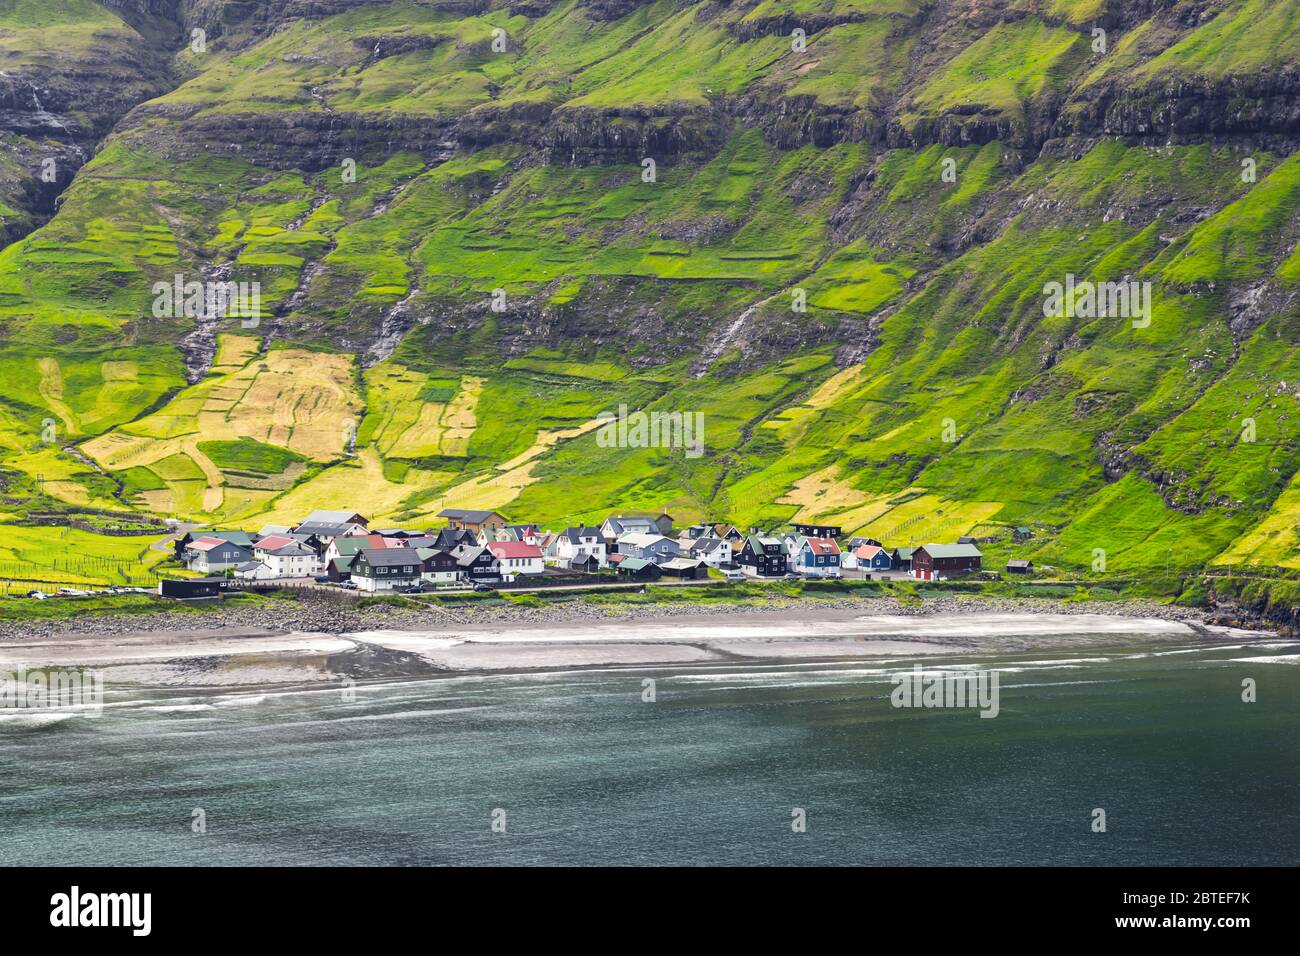 Plage du village de Tjornuvik sur l'île de Streymoy, îles Féroé, Danemark. Photographie de paysage Banque D'Images